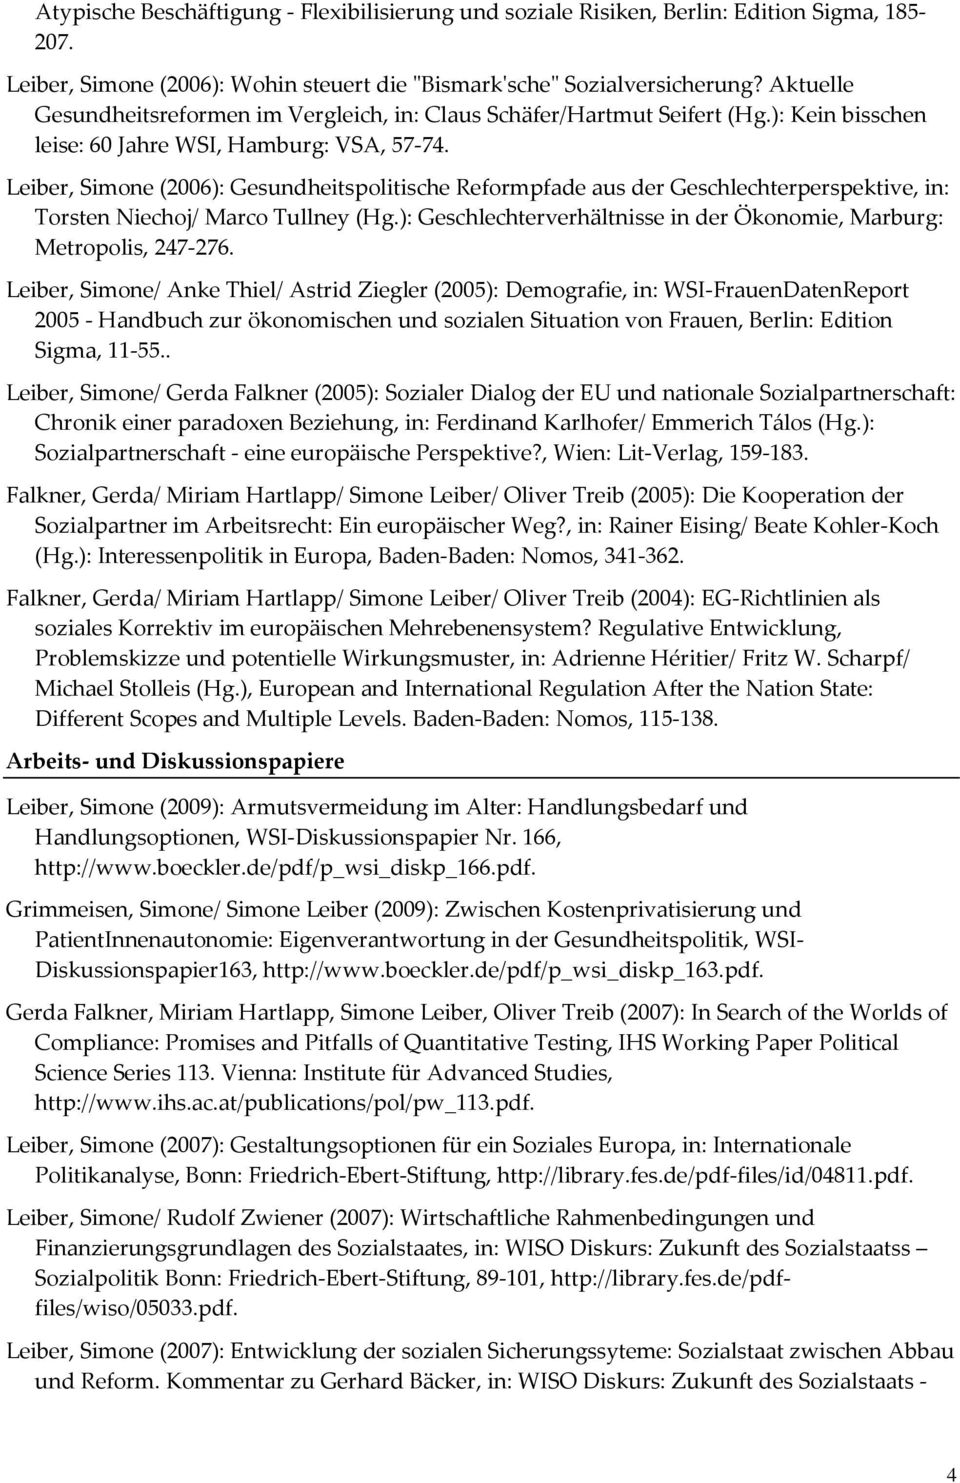 Leiber, Simone (2006): Gesundheitspolitische Reformpfade aus der Geschlechterperspektive, in: Torsten Niechoj/ Marco Tullney (Hg.